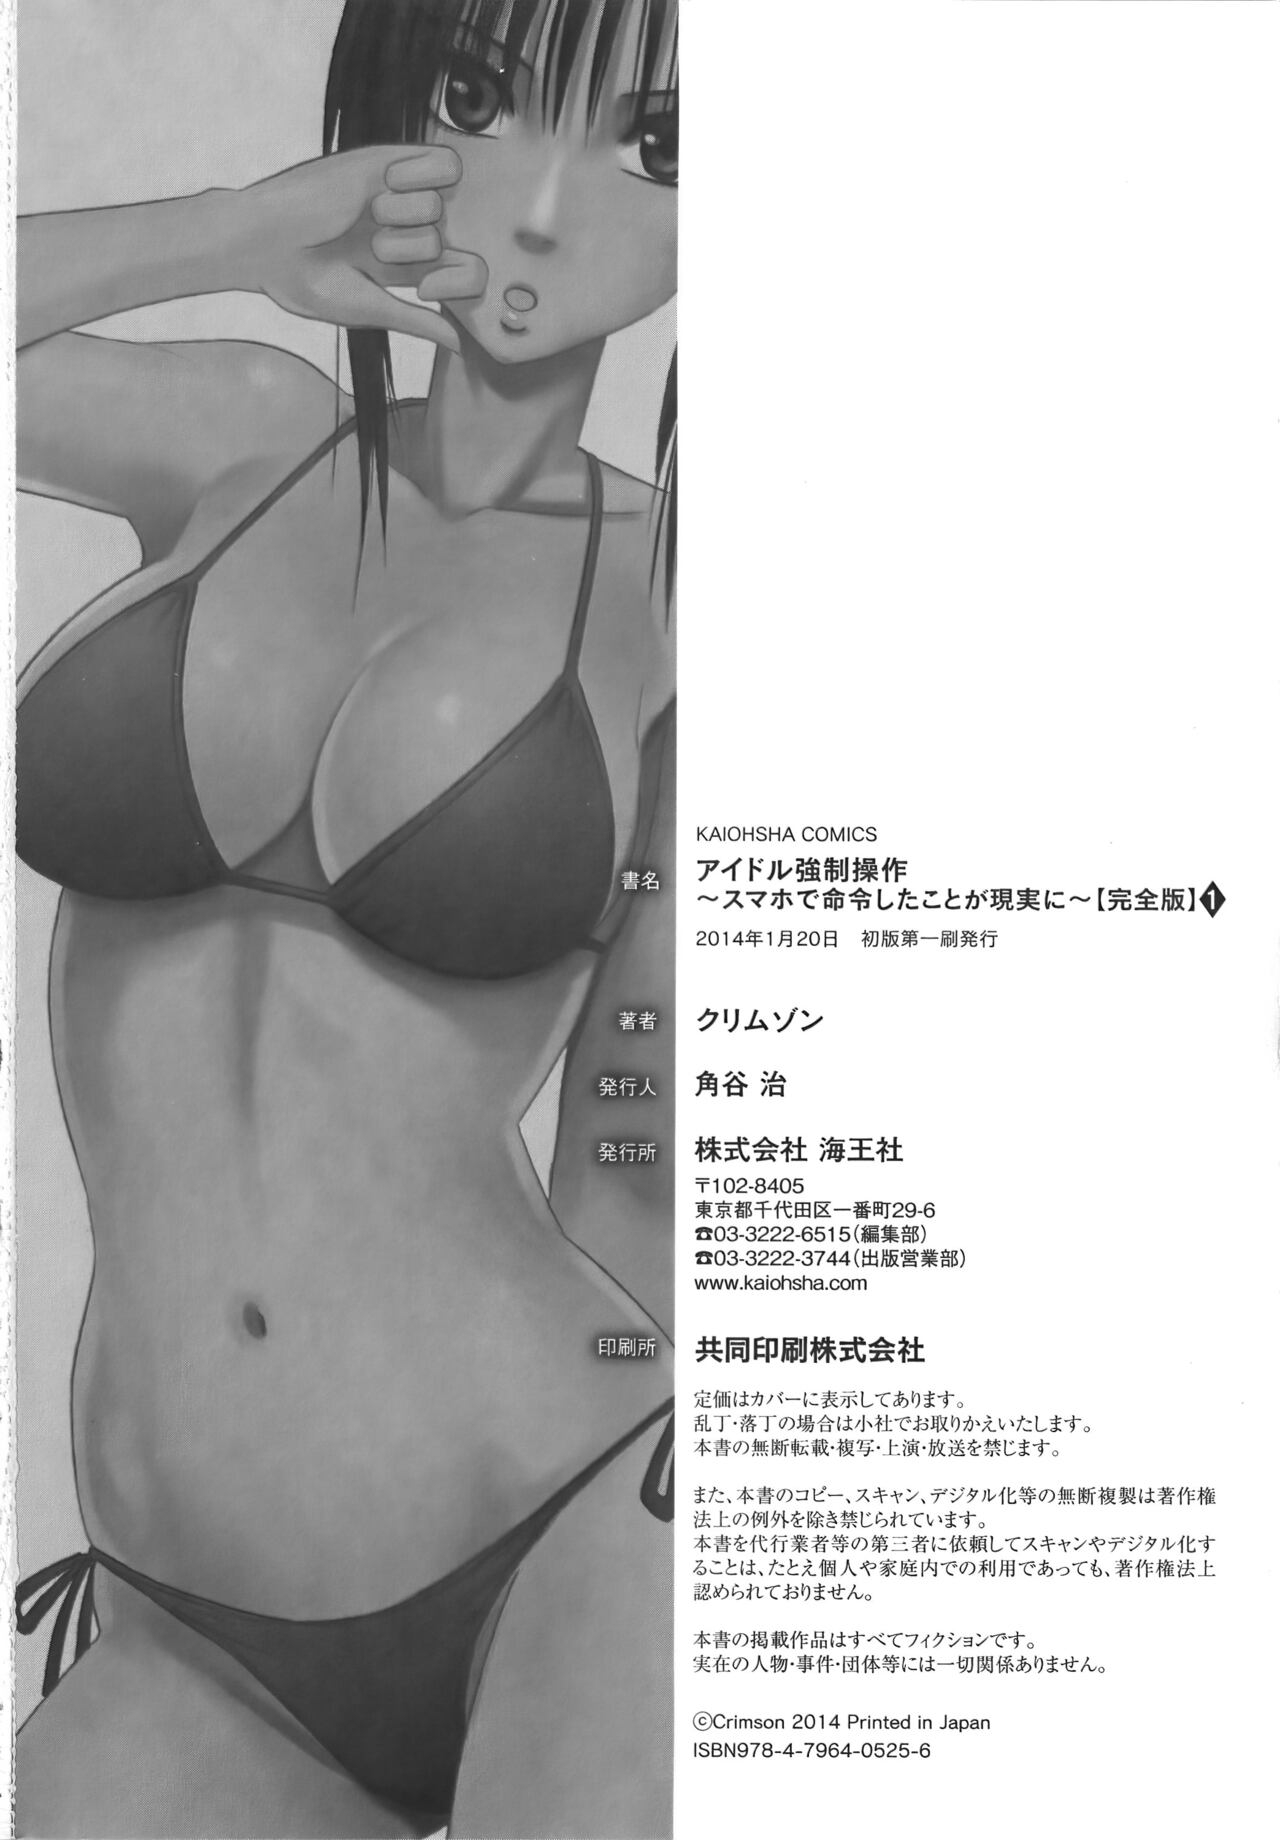 [Crimson] Idol Kyousei Sousa Vol.1 Smartphone de Meireishita Koto ga Genjitsu ni [Complete Edition] 271